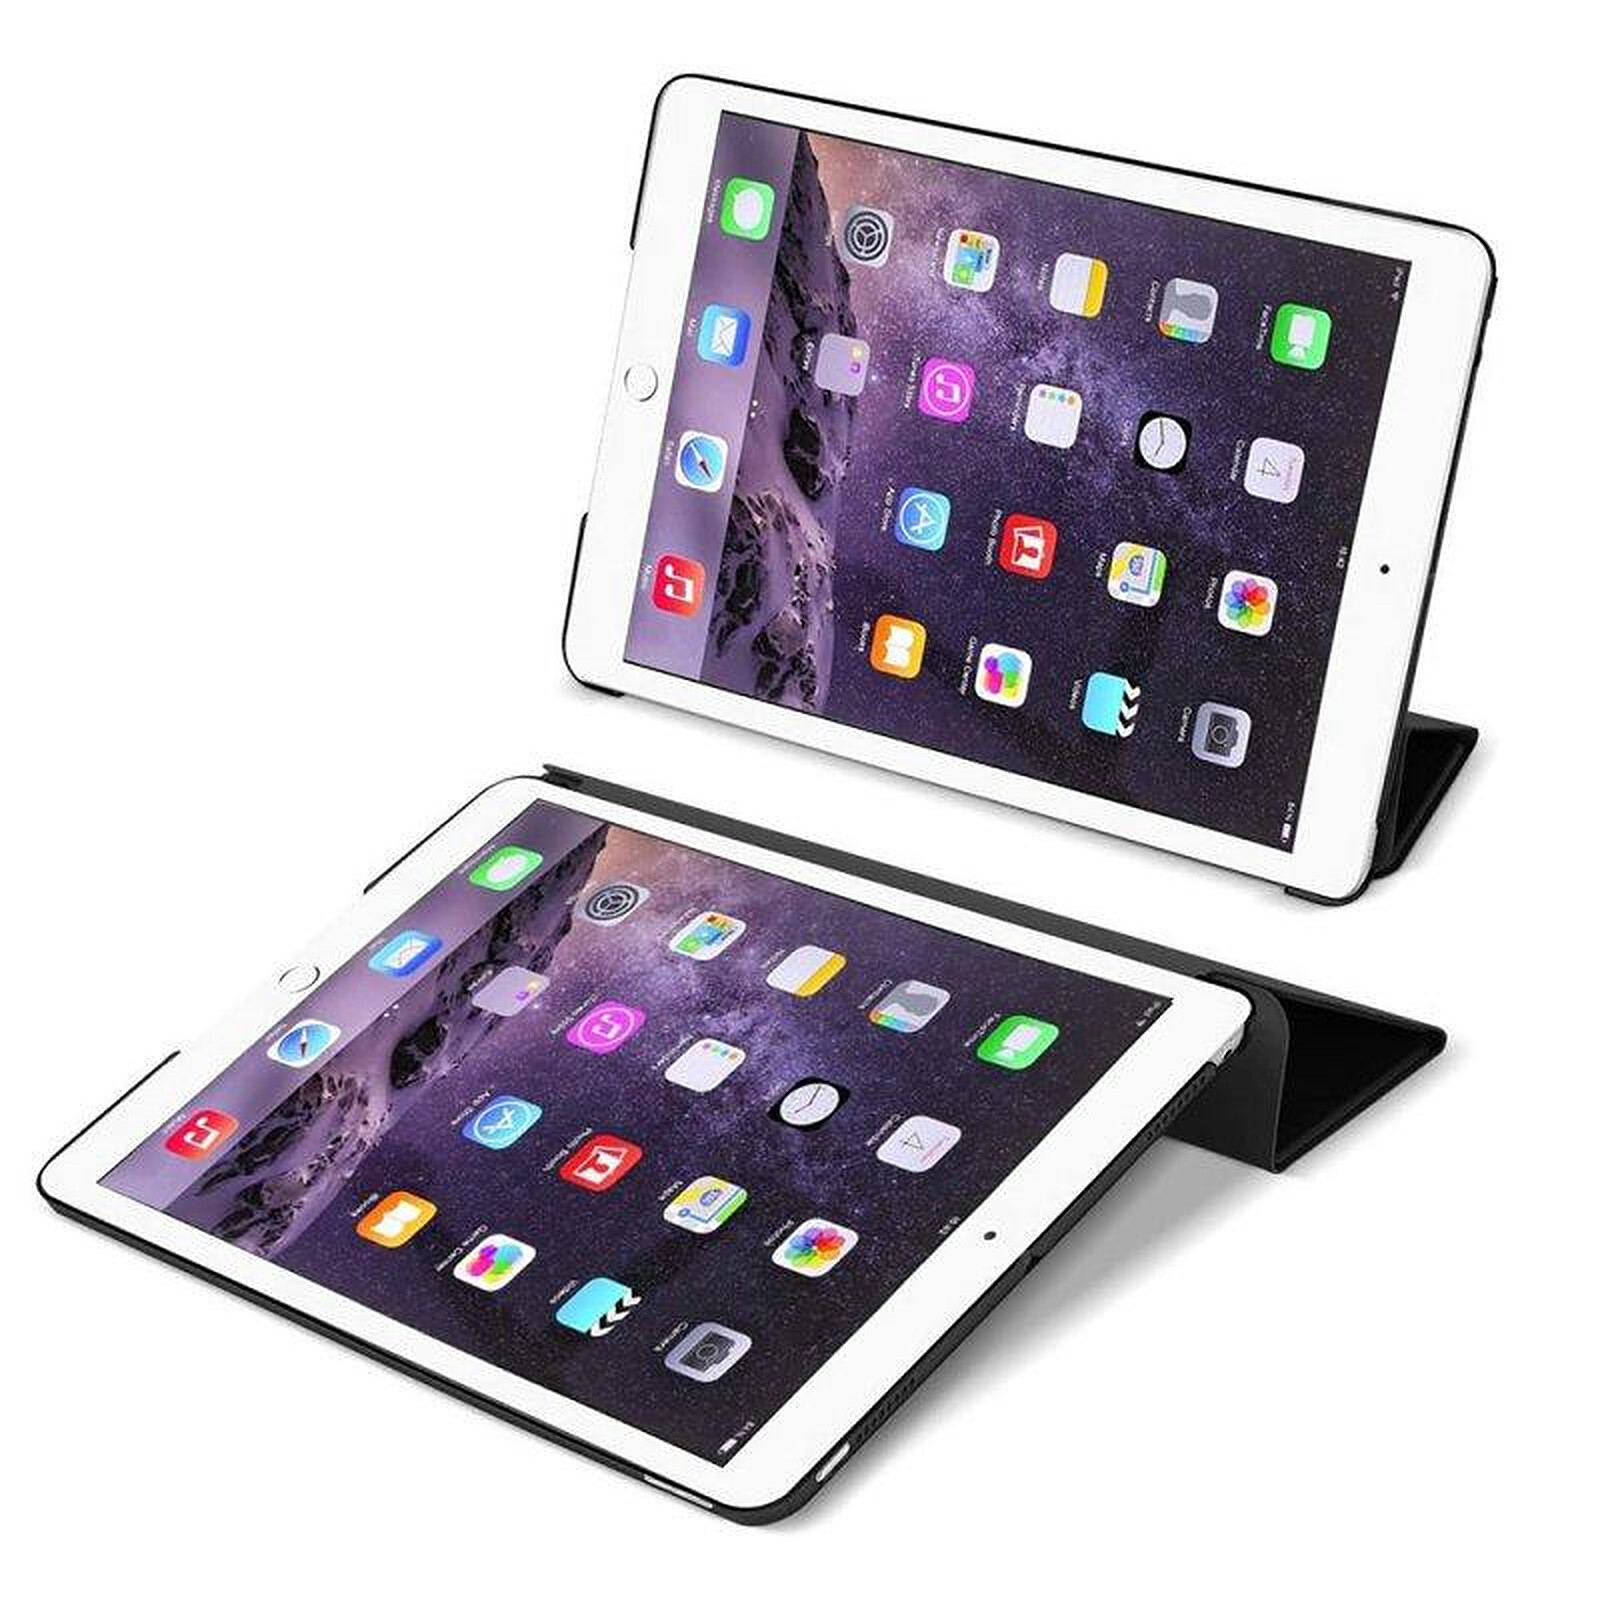 Evetane Étui Smart Cover iPad Air 2 9,7 pouces ( Fin 2014) Noir à Rabat  avec Support - Etui tablette - LDLC